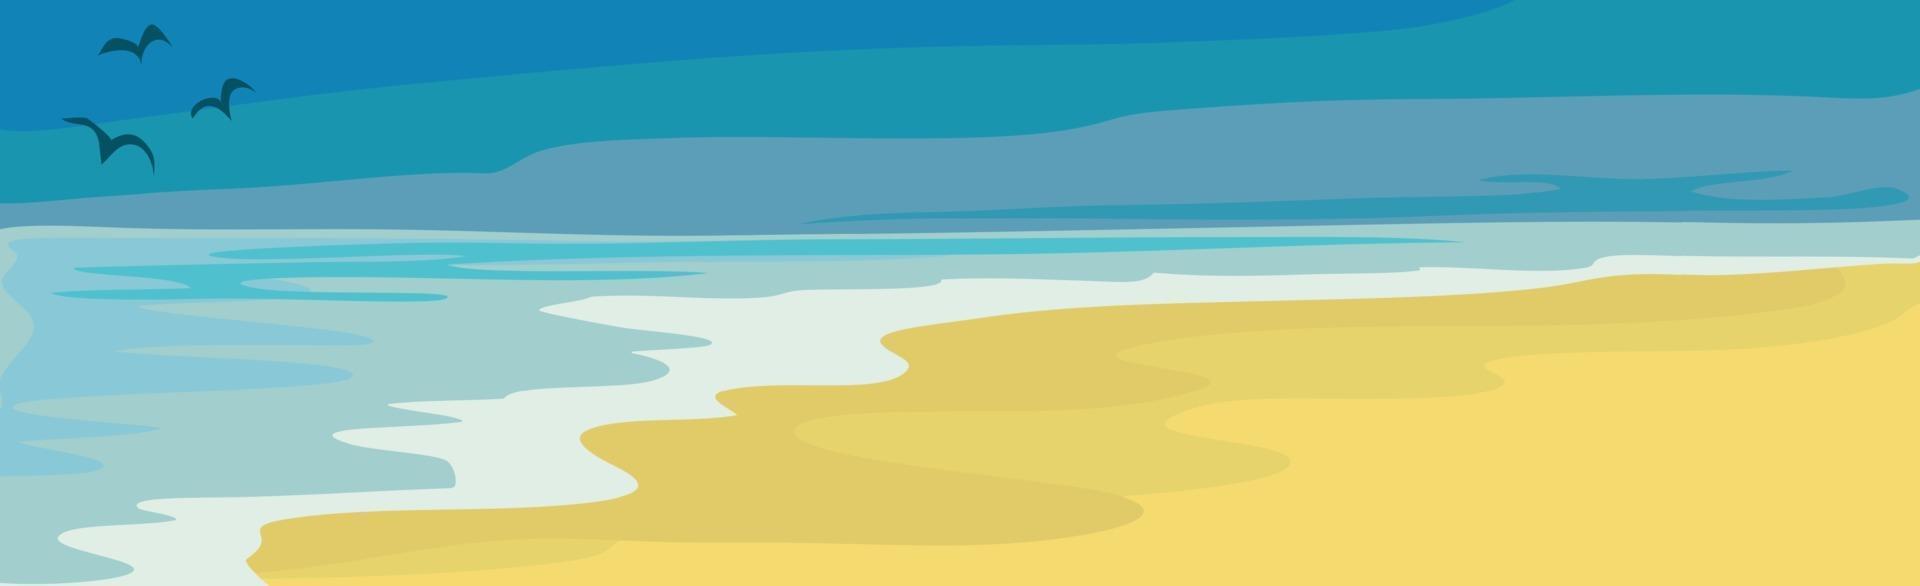 illustratie zonnig zandstrand en blauwe zee vector